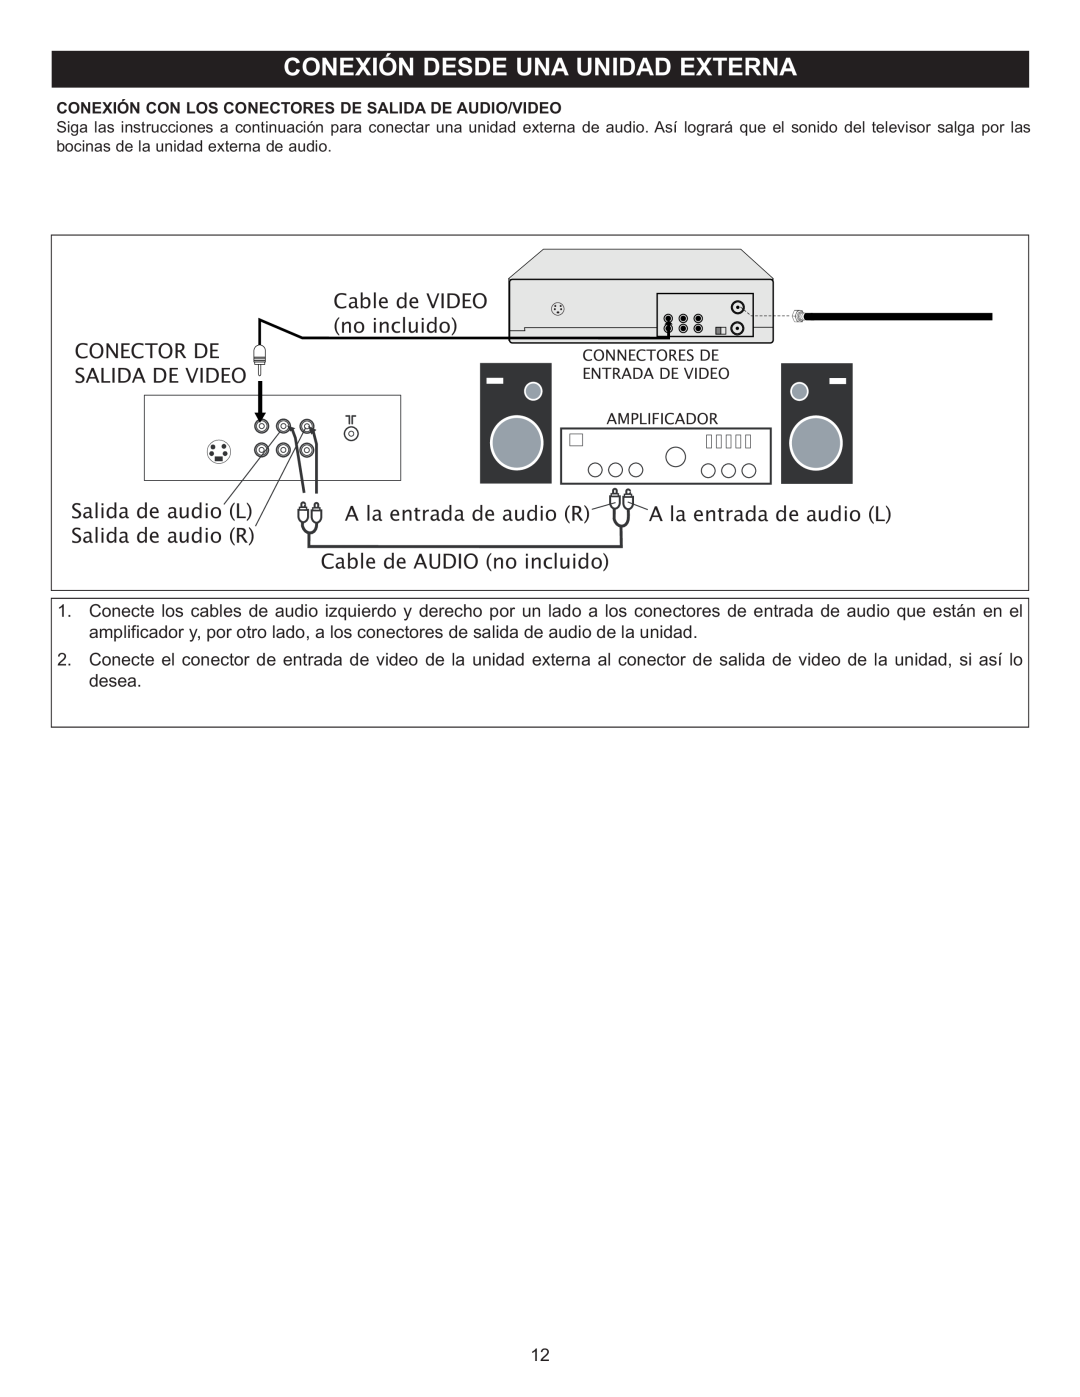 Memorex MT2028D-BLK Cable de VIDEO no incluido CONECTOR DE SALIDA DE VIDEO, Salida de audio L, A la entrada de audio R 